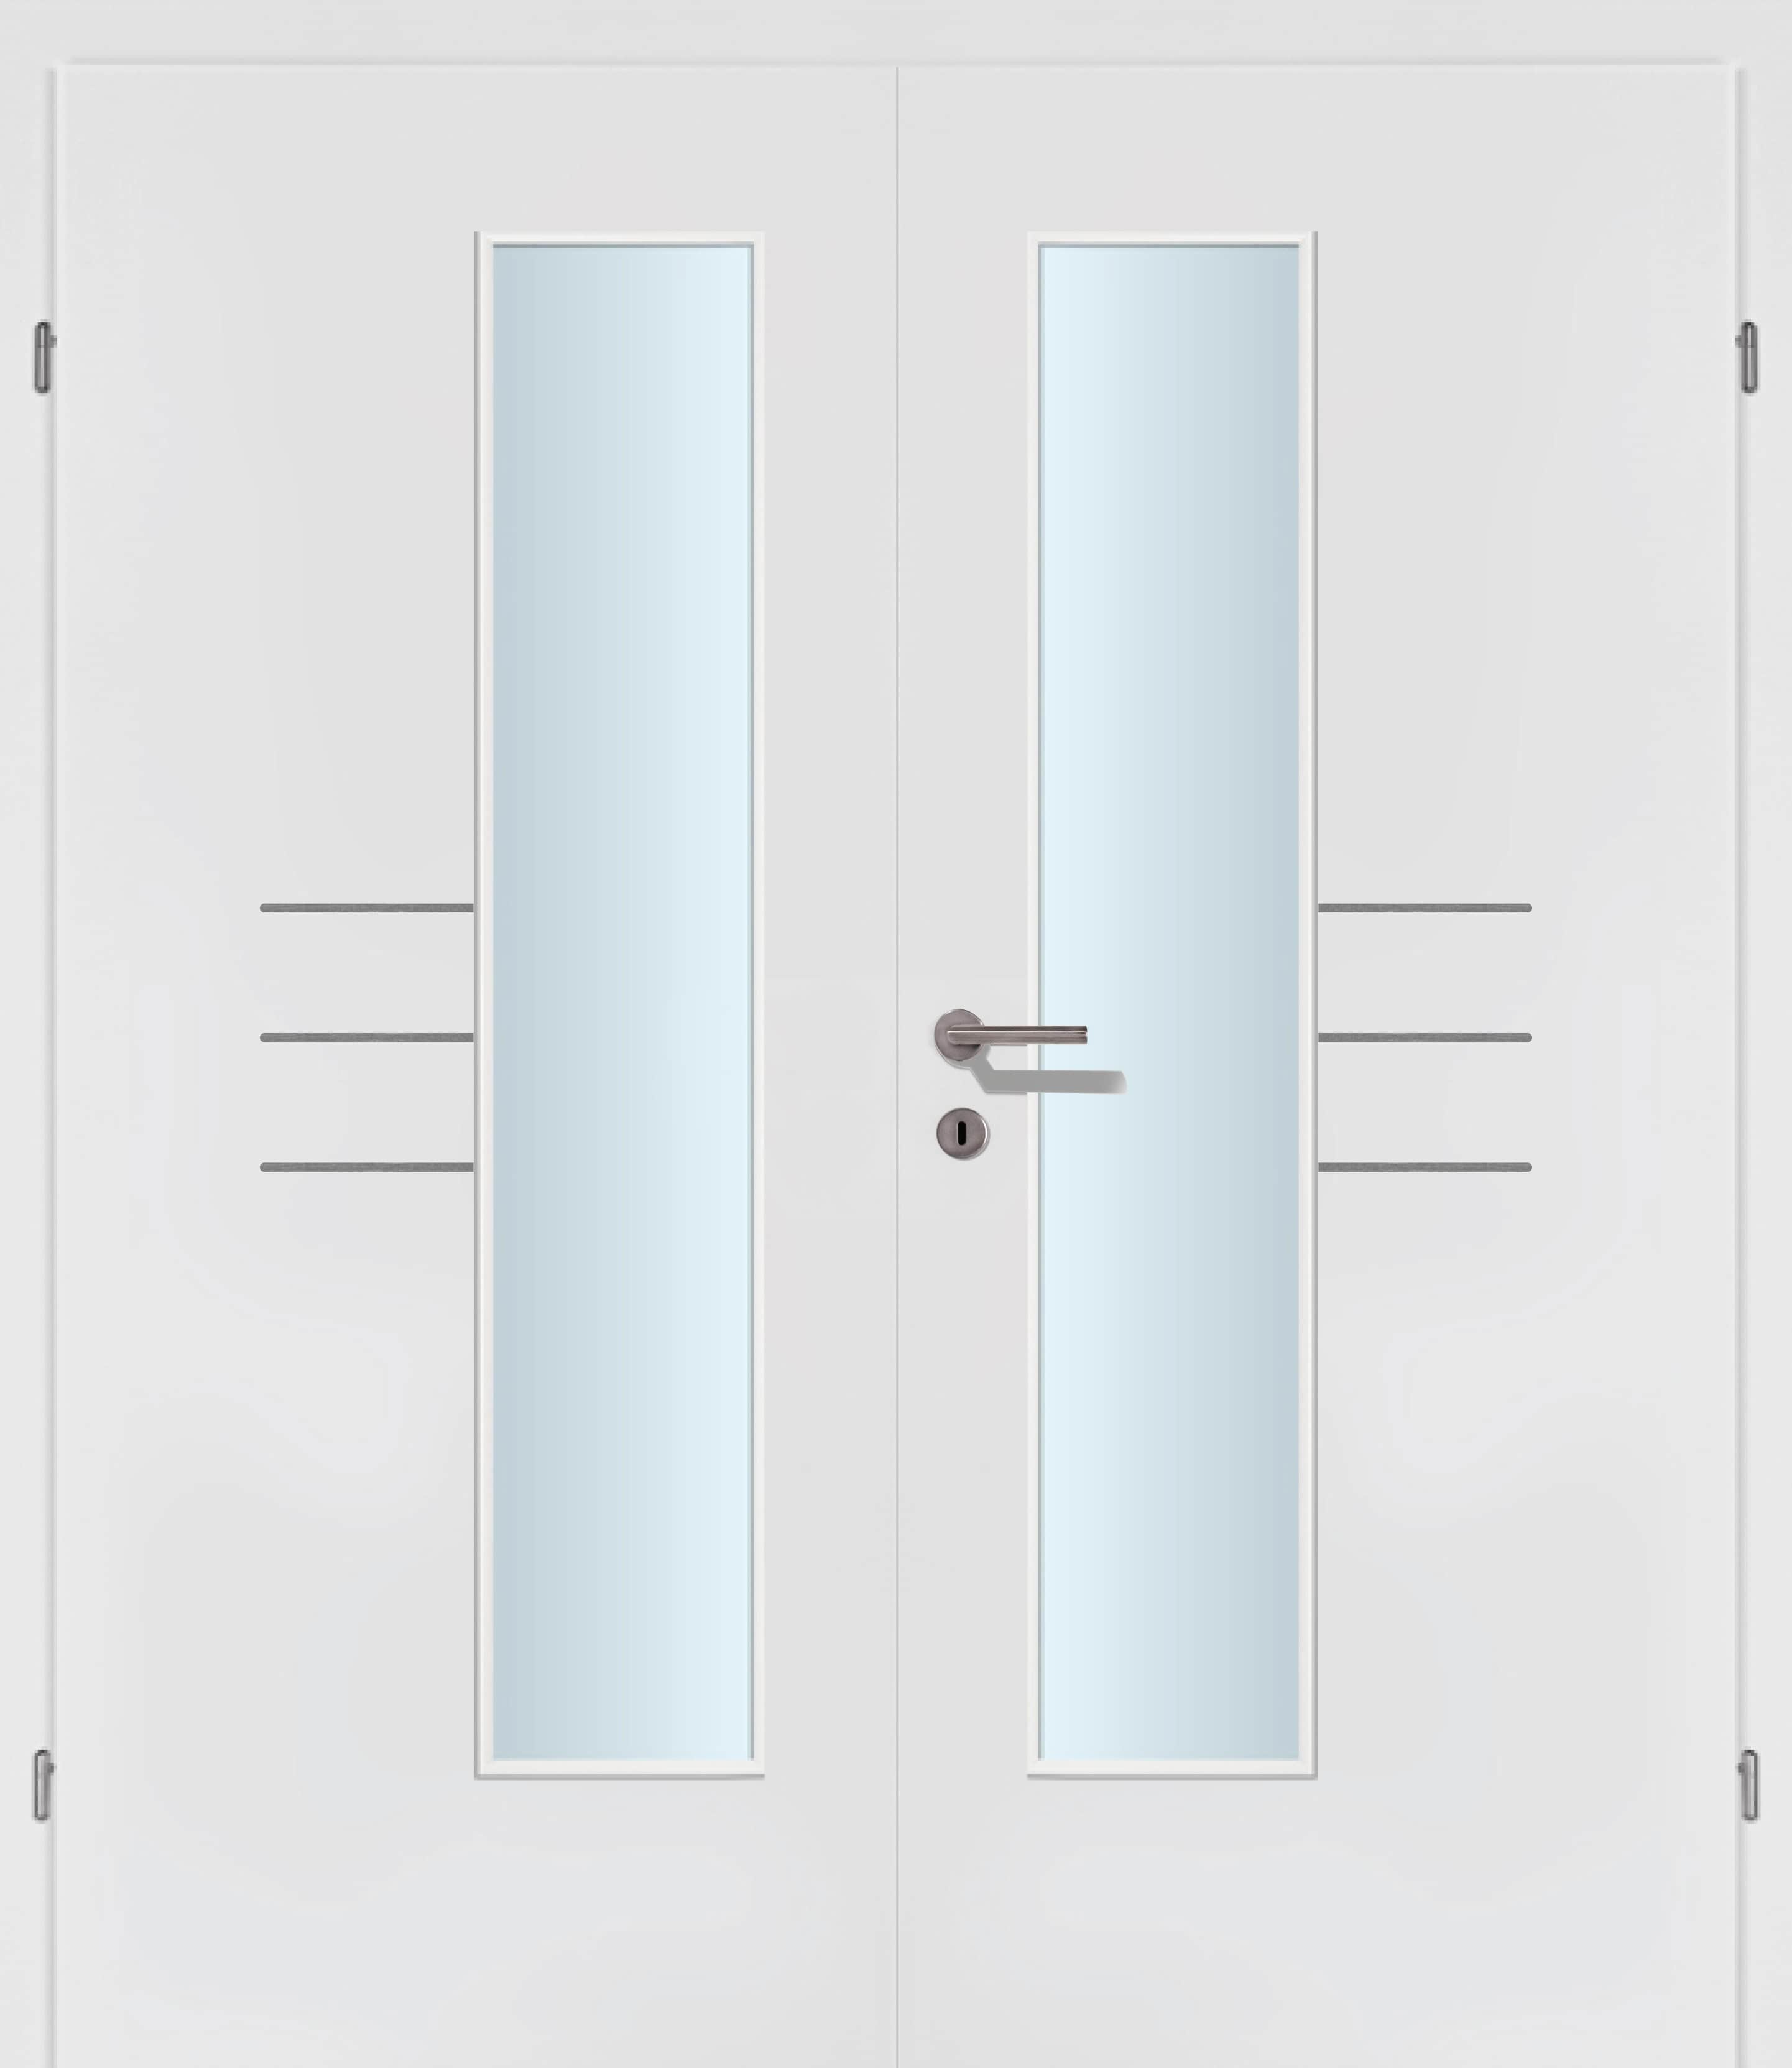 Selektion T50 Alu Effekt Lisenen weiss Innentür Inkl. Zarge (Türrahmen) Doppeltüre Inkl. Glaslichte EN Drückerseitig